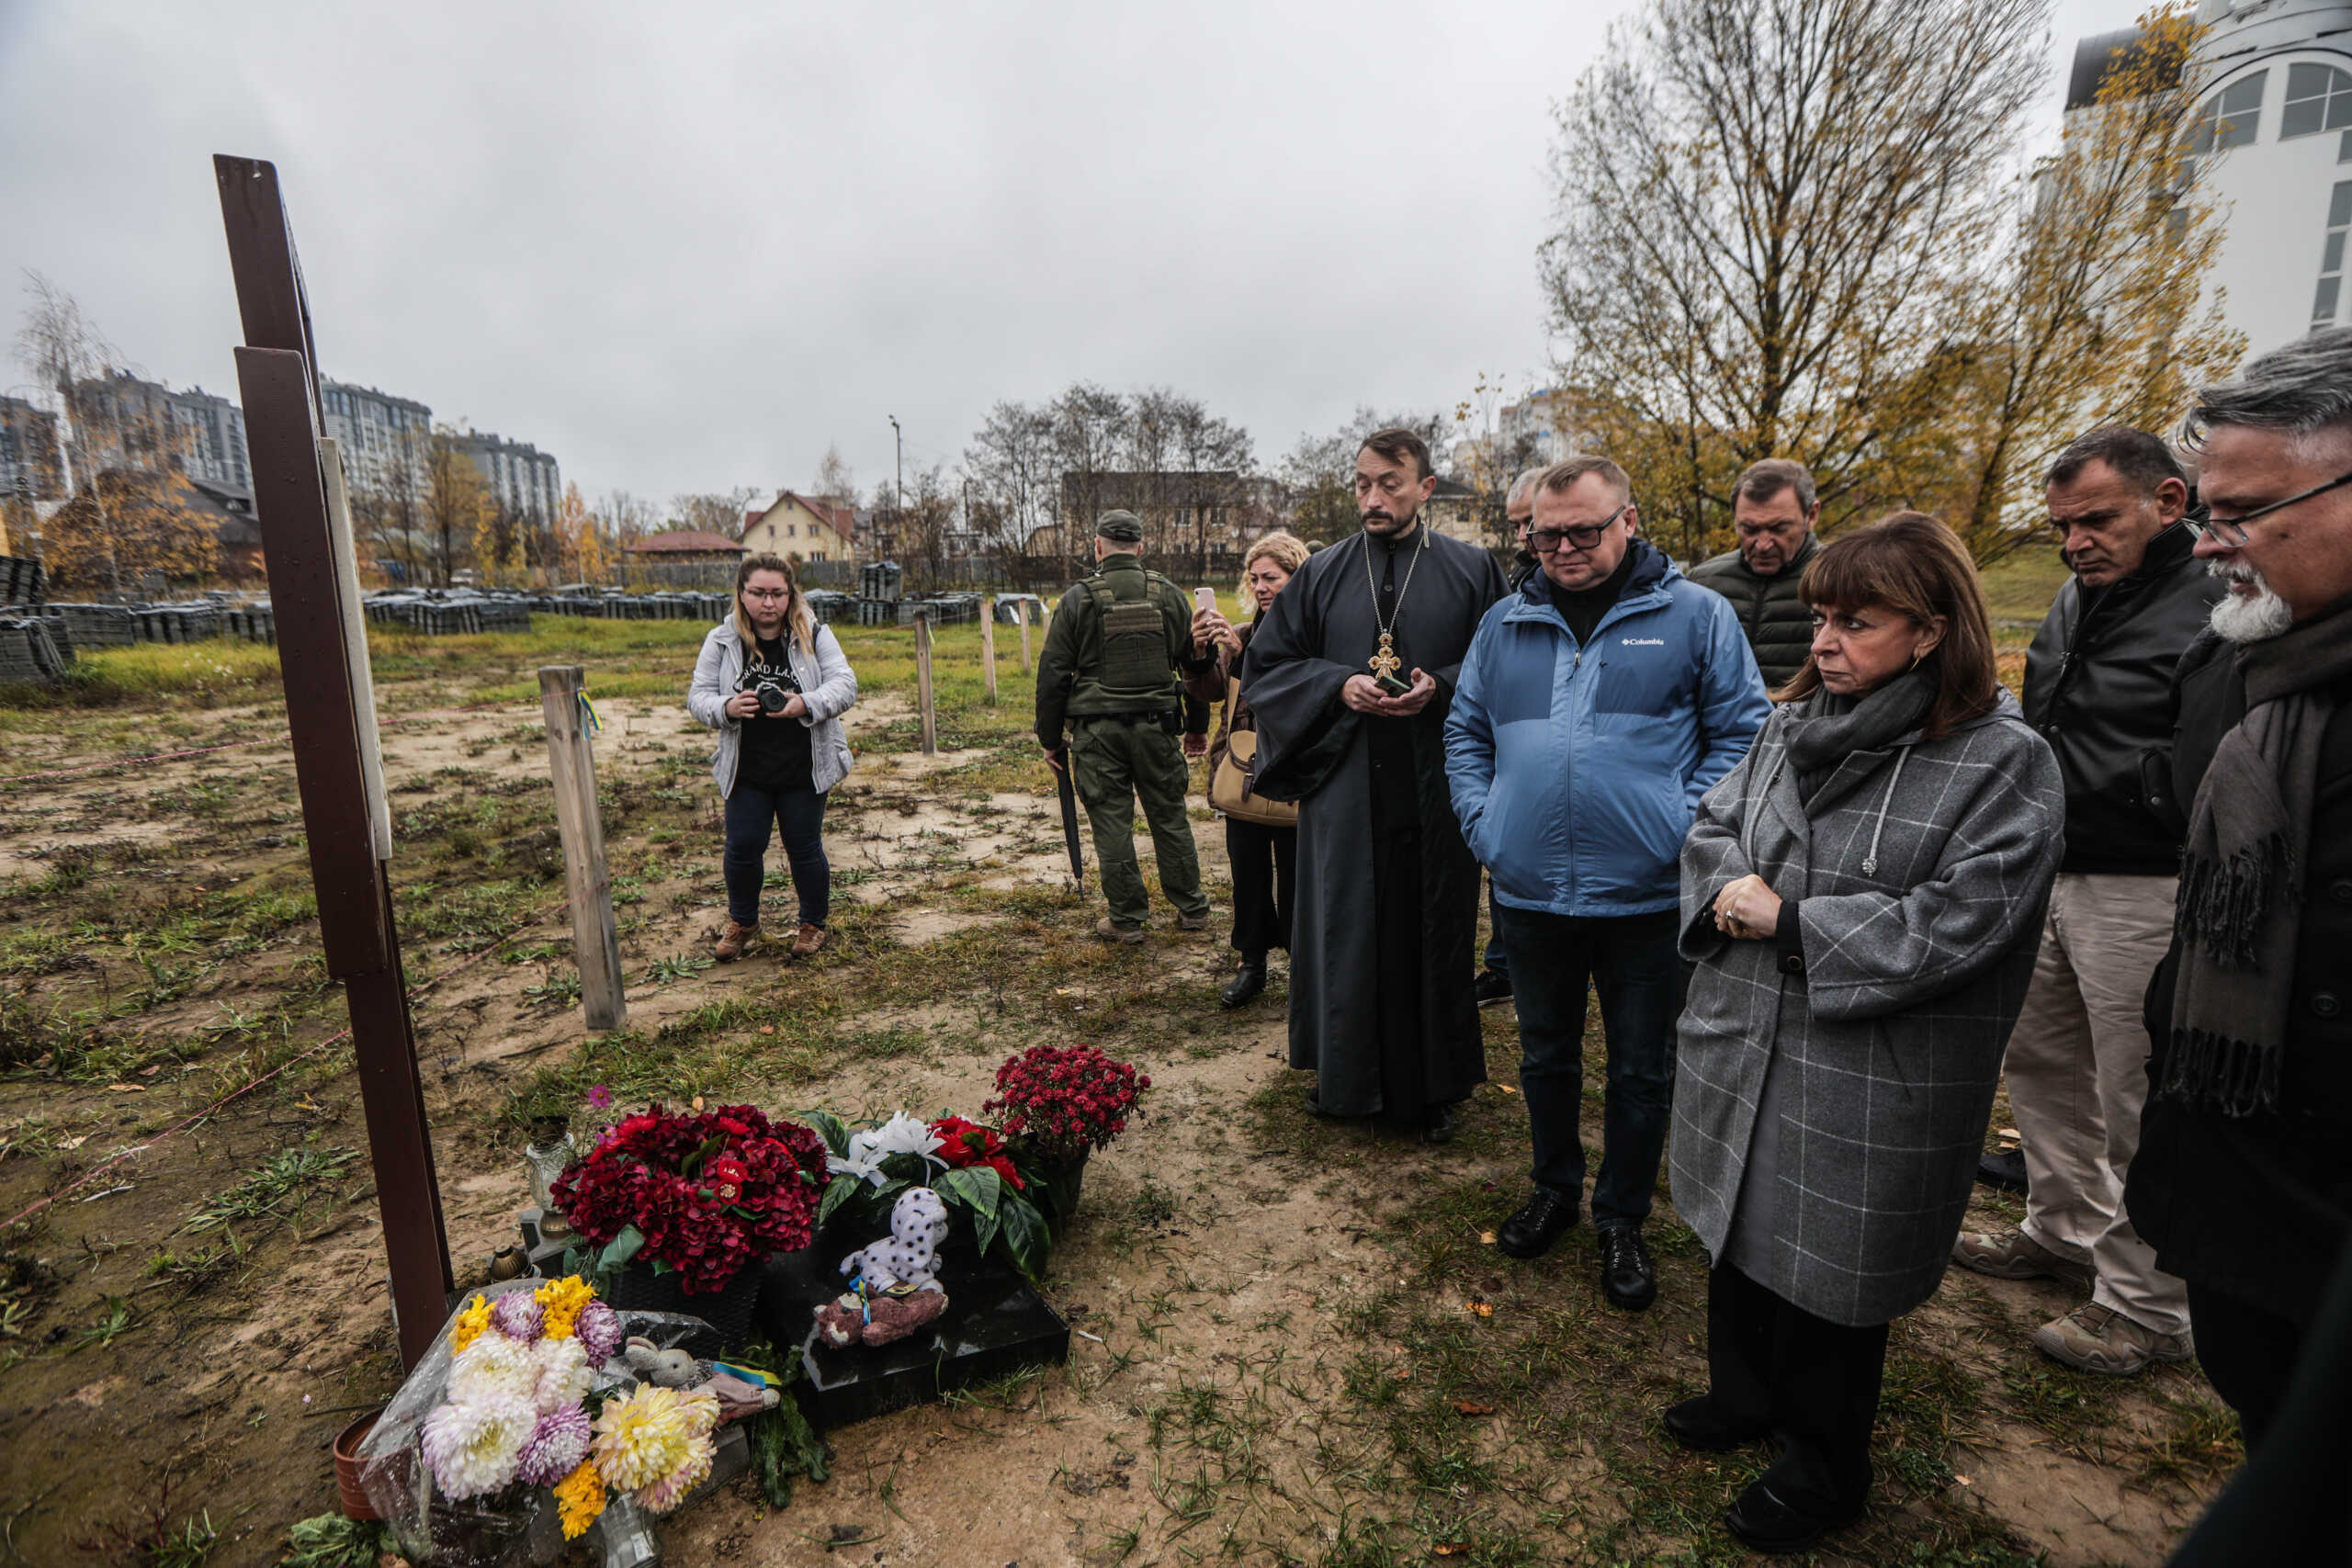 Η Κατερίνα Σακελλαροπούλου στις μαρτυρικές πόλεις της Ουκρανίας: Επισκέφτηκε Μποροντιάνκα, Μπούτσα και Ιρπίν